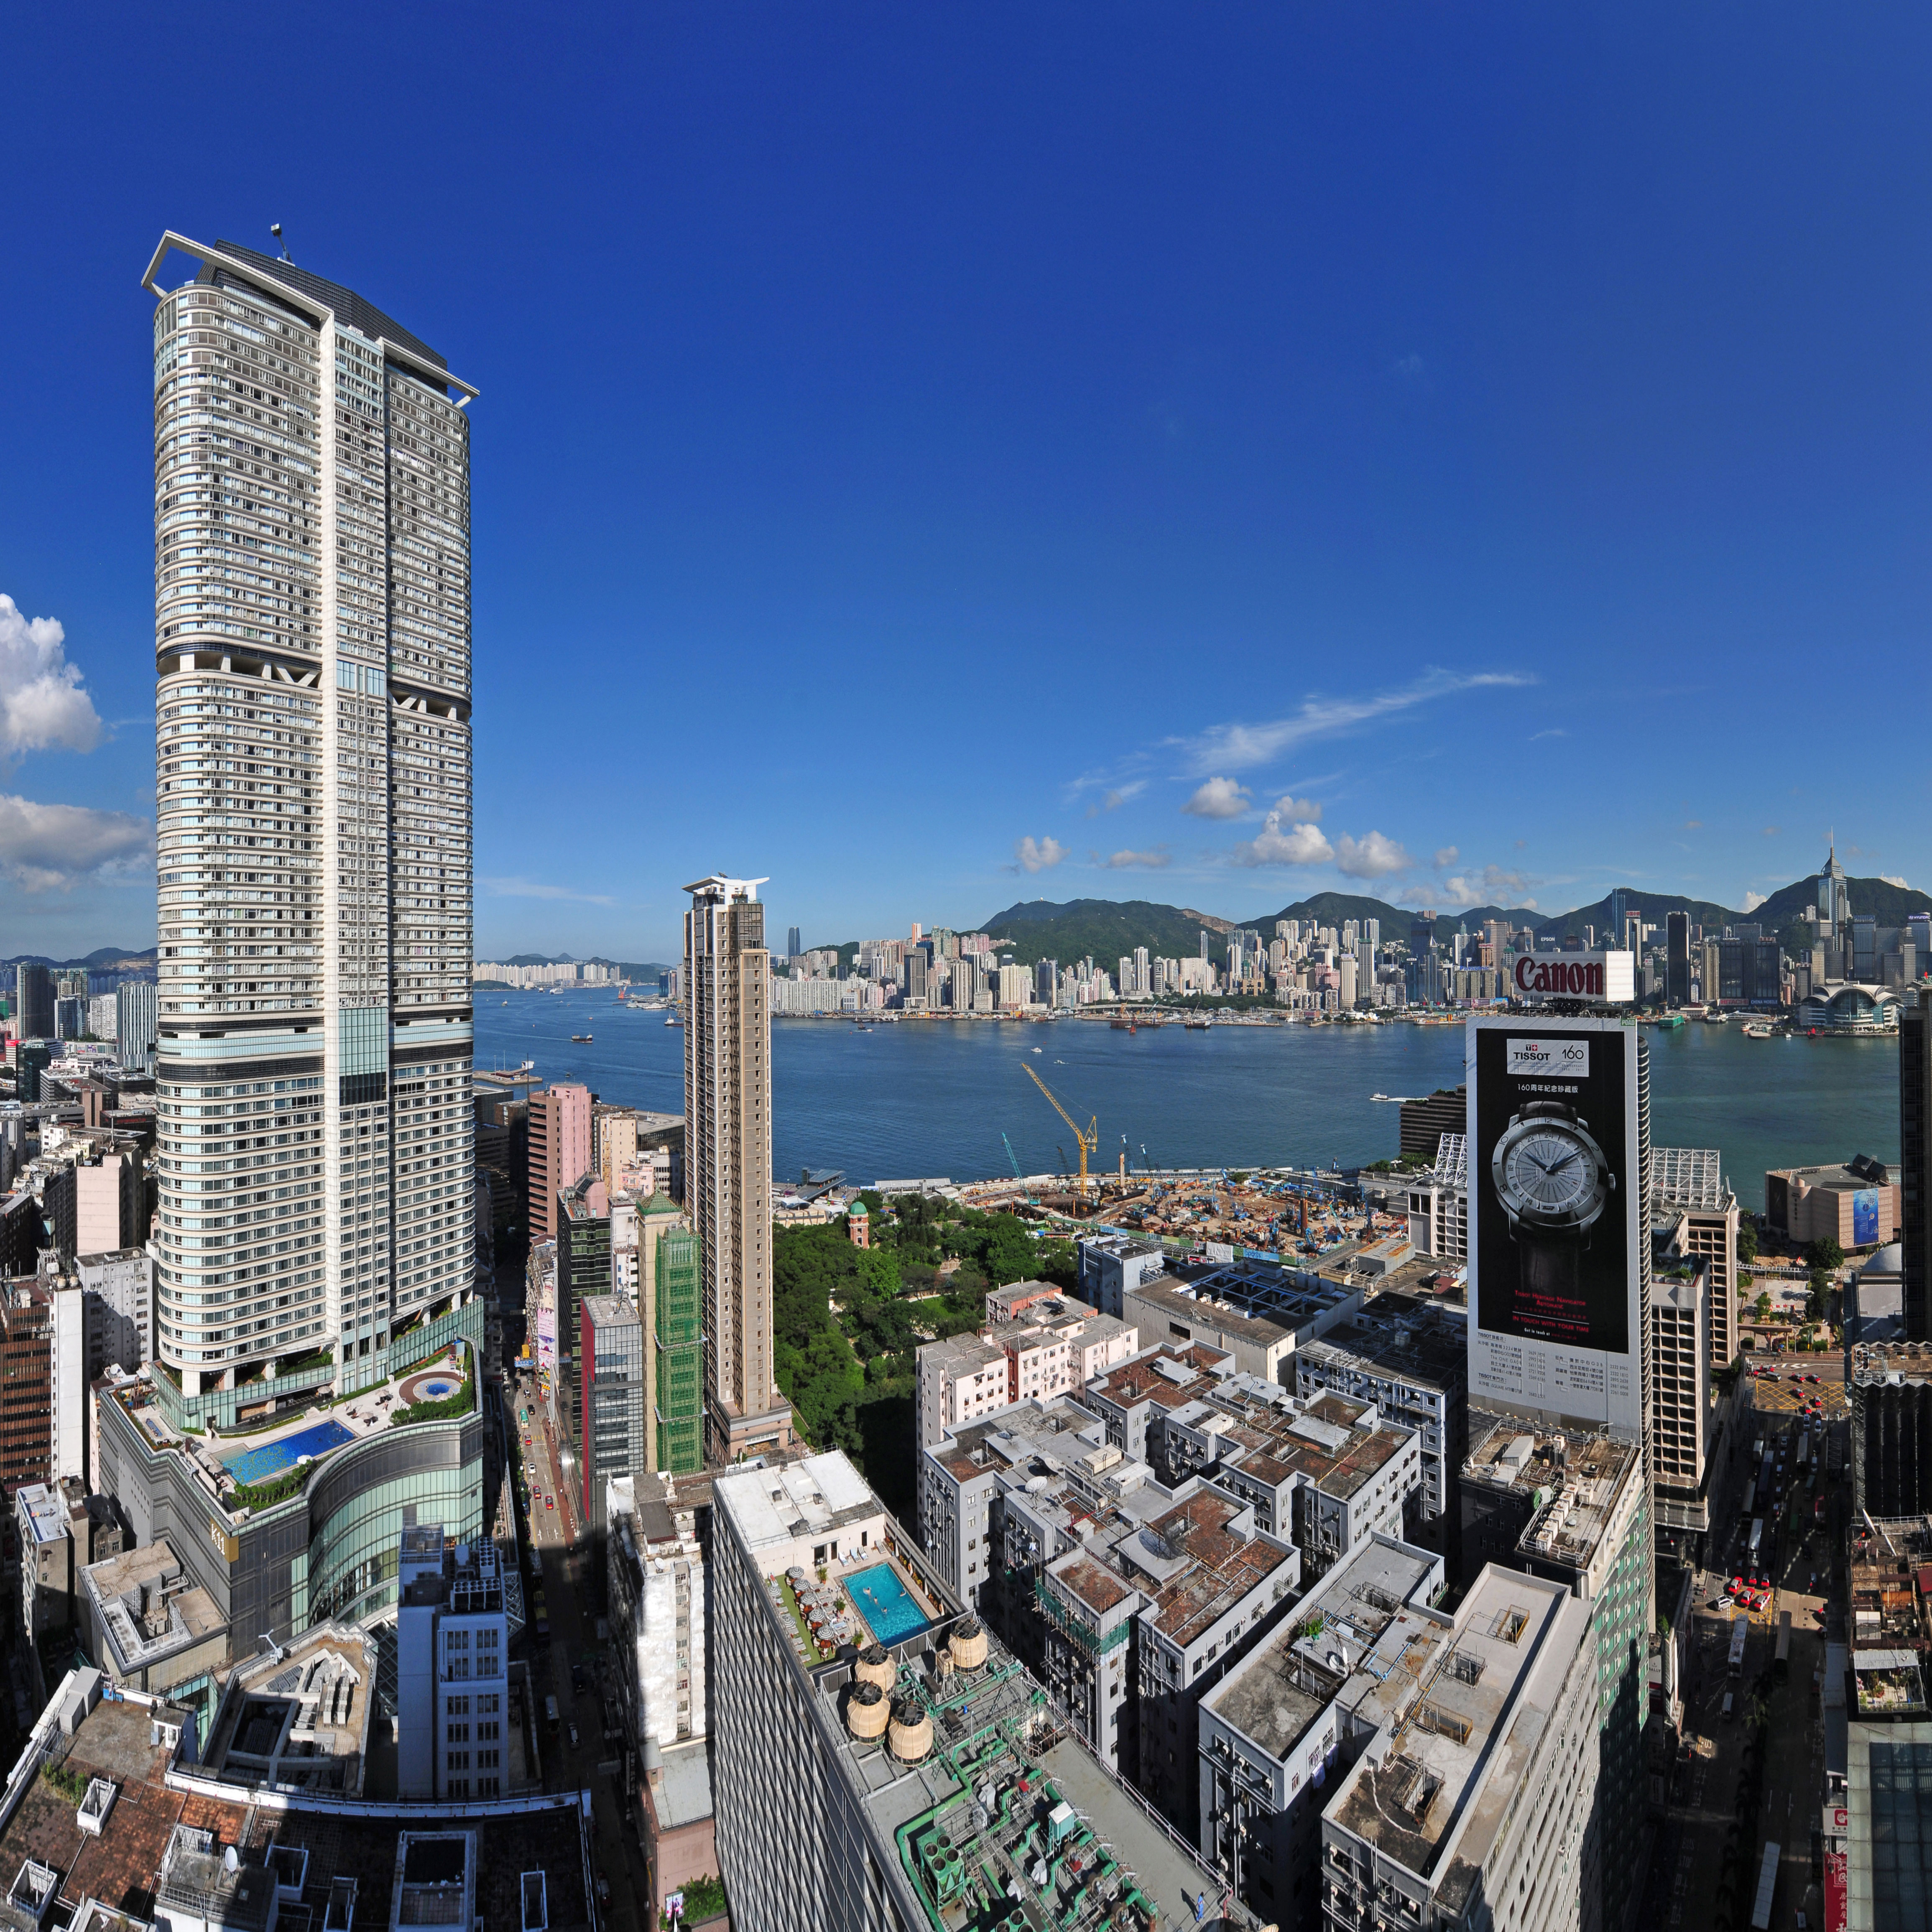 13-08-08-hongkong-by-RalfR-Panorama2a.jpg